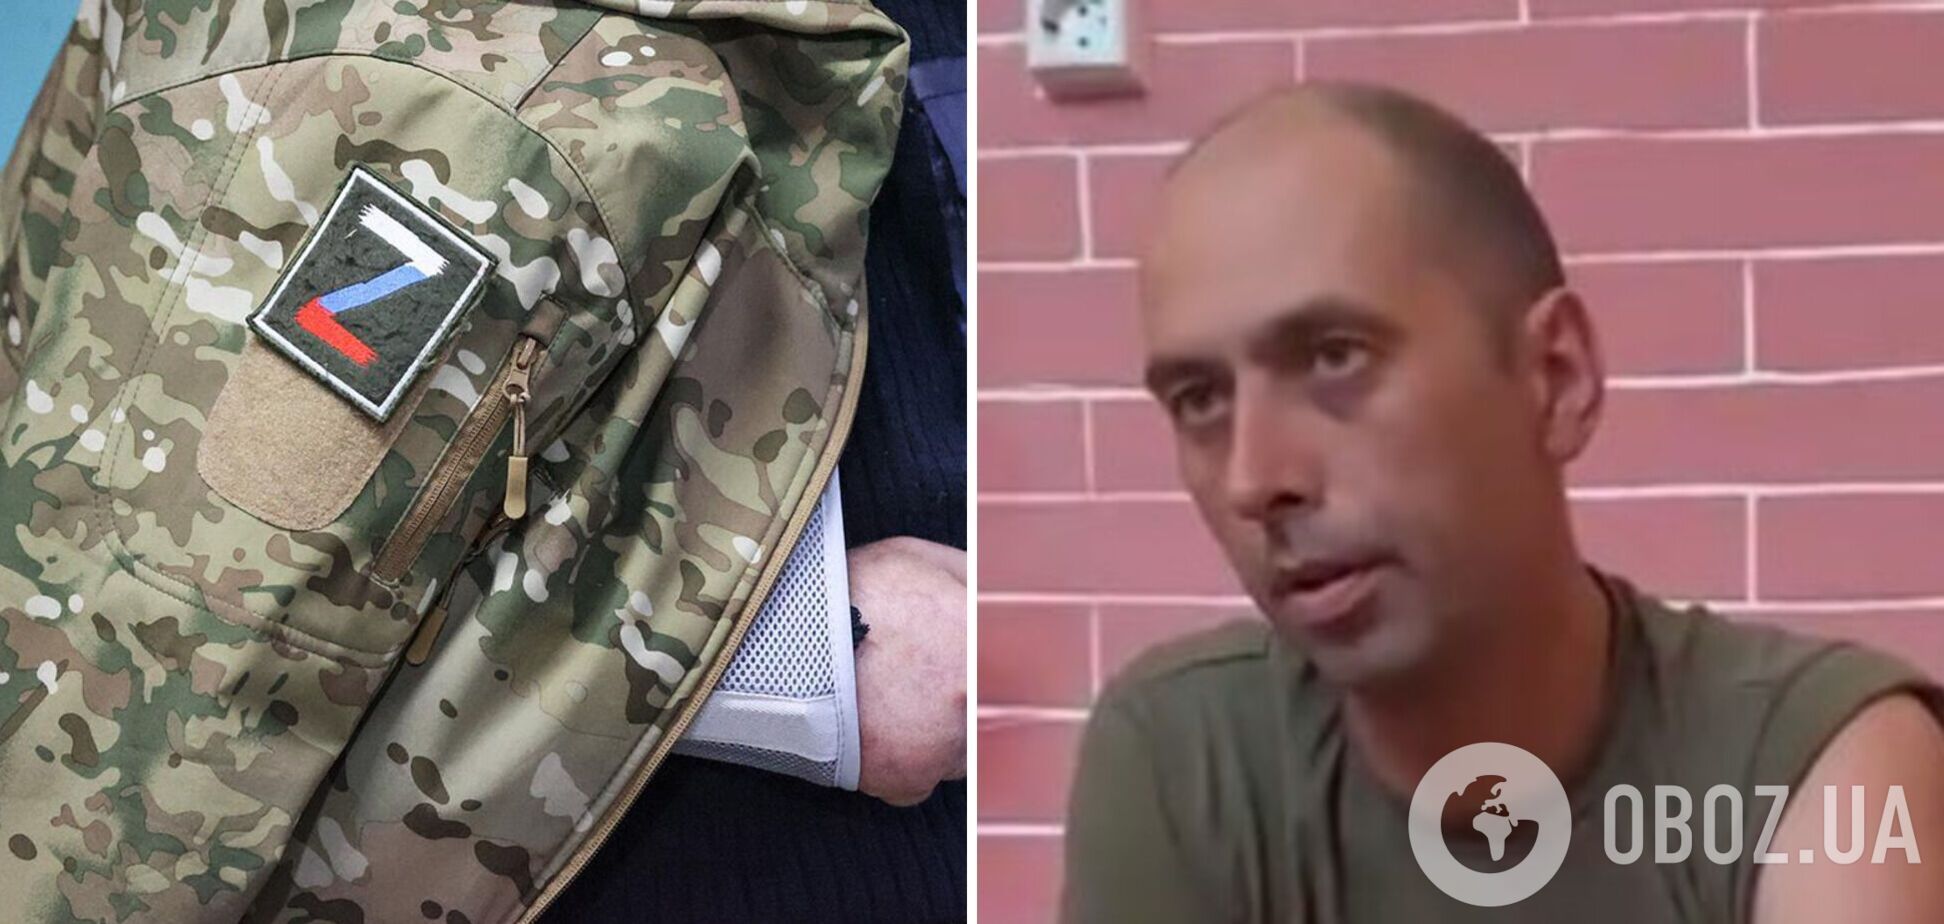 'Выдали одну саперную лопату на подразделение': пленный оккупант рассказал об обеспечении армии РФ. Видео